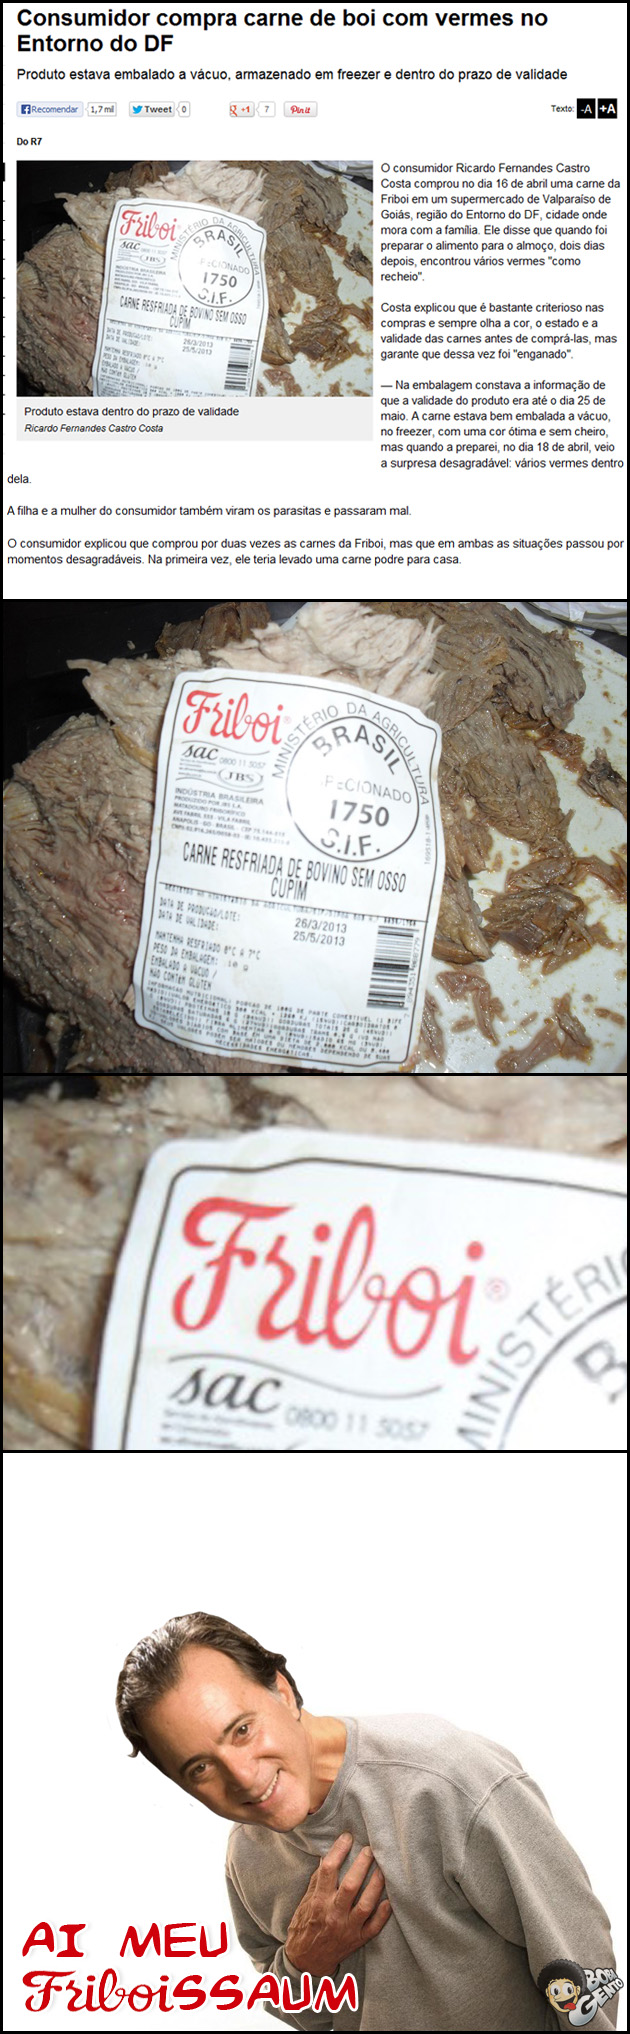 FRIBOI Consumidor compra carne com vermes